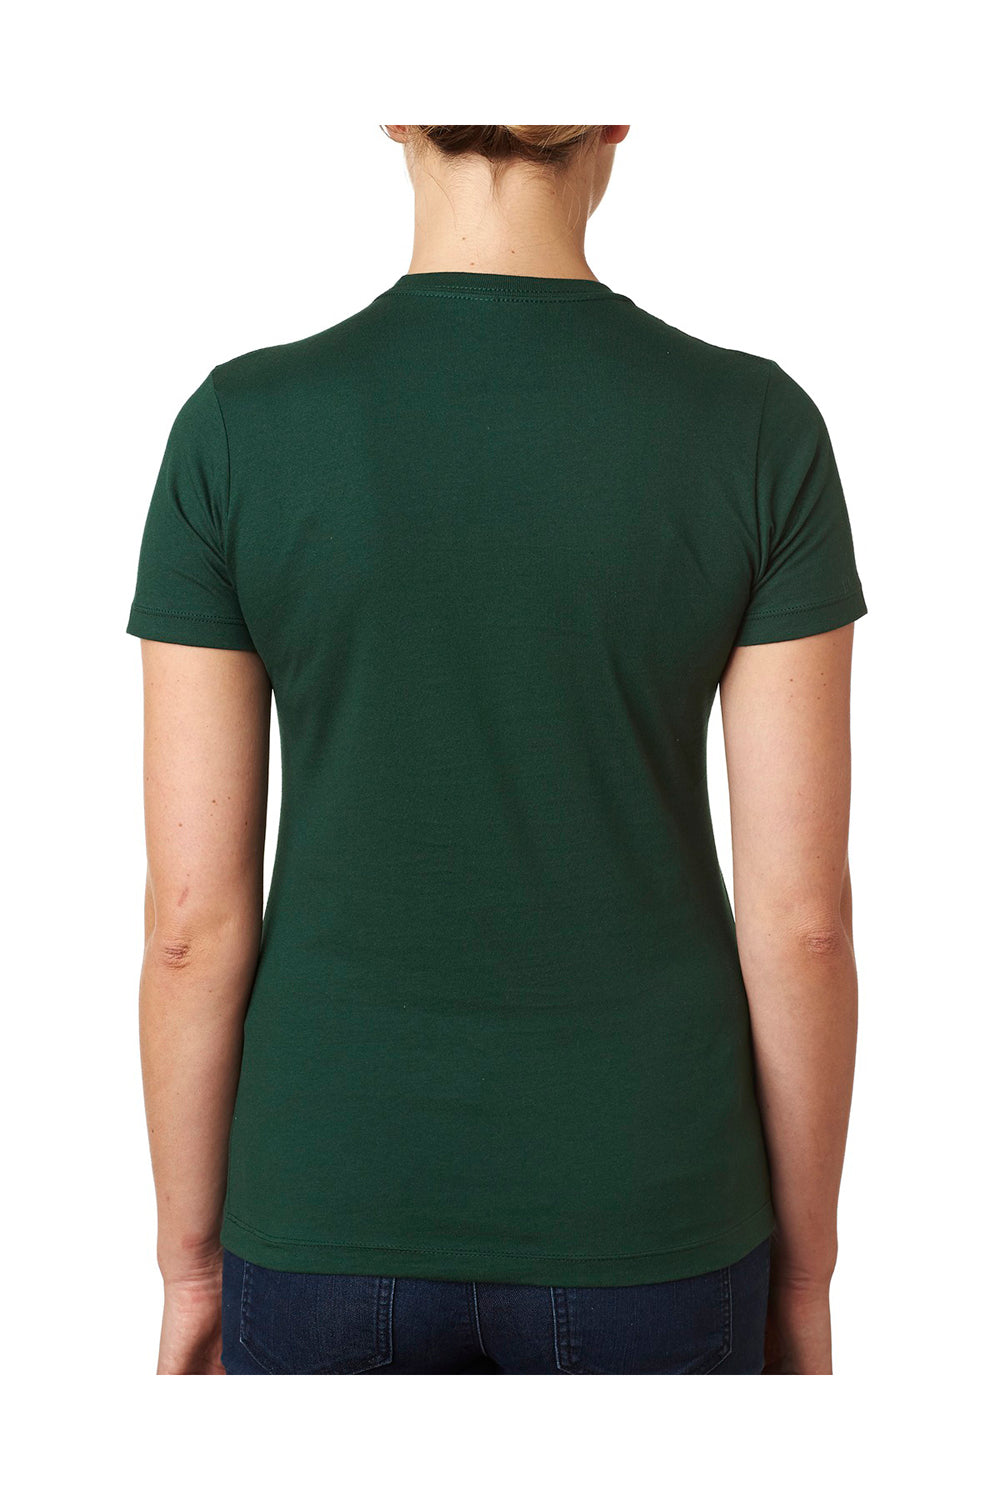 Next Level N3900 Womens Boyfriend Fine Jersey Short Sleeve Crewneck T-Shirt Forest Green Back